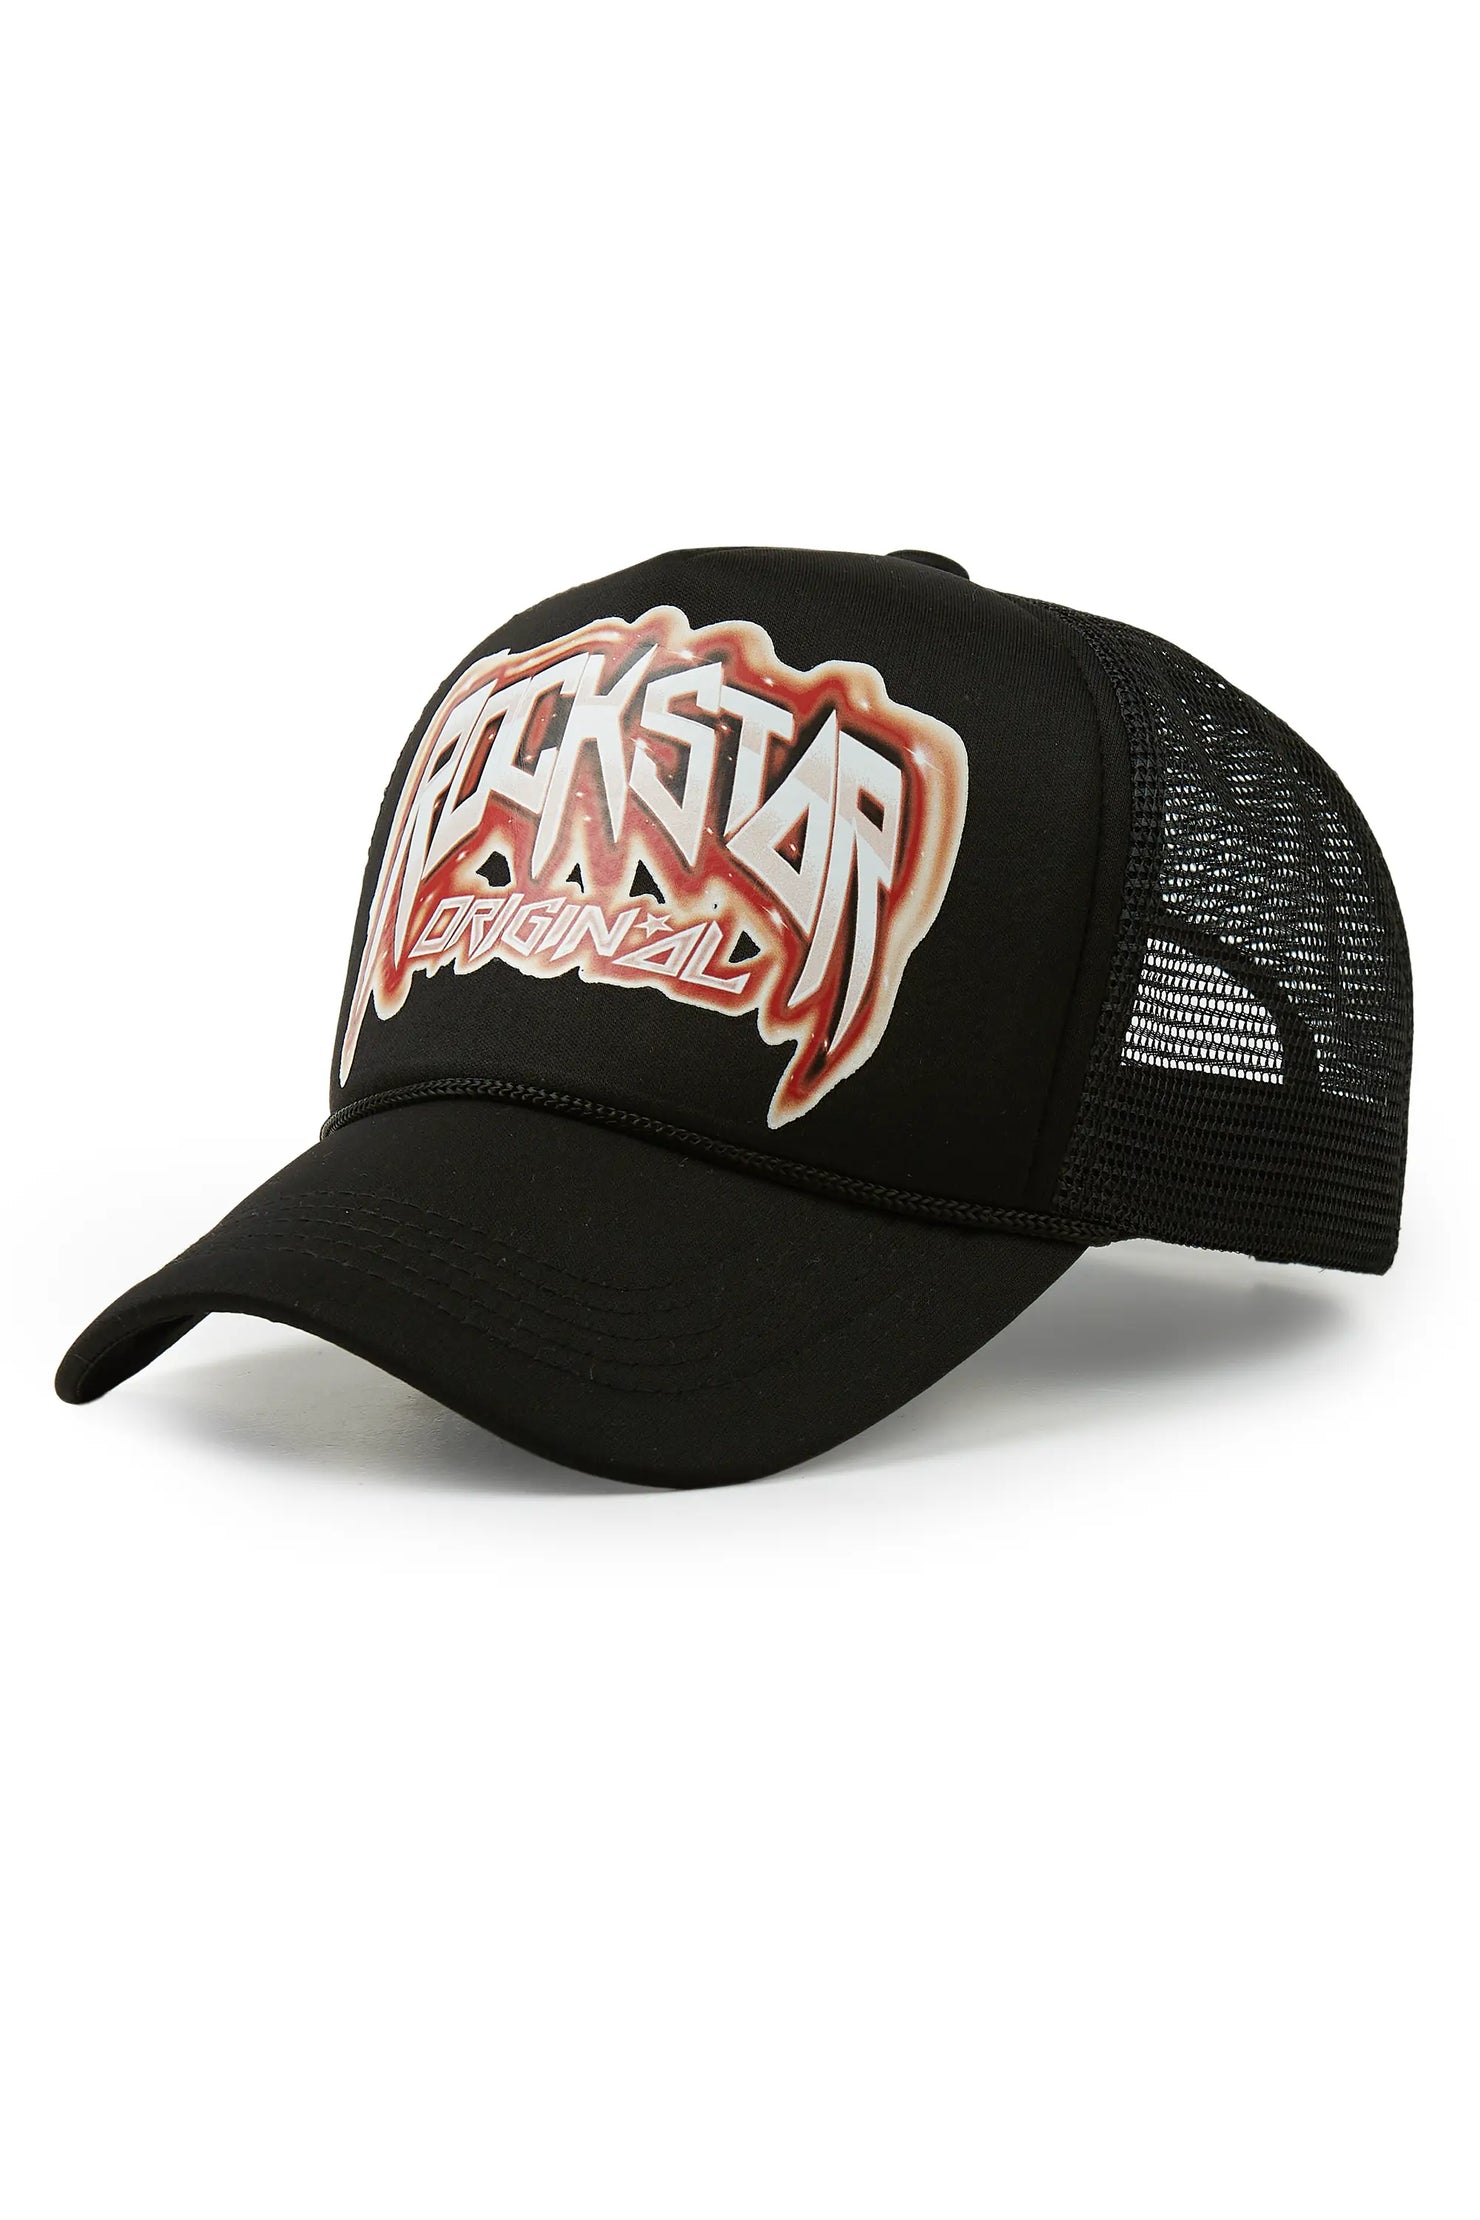 Gangsta Black Trucker Hat